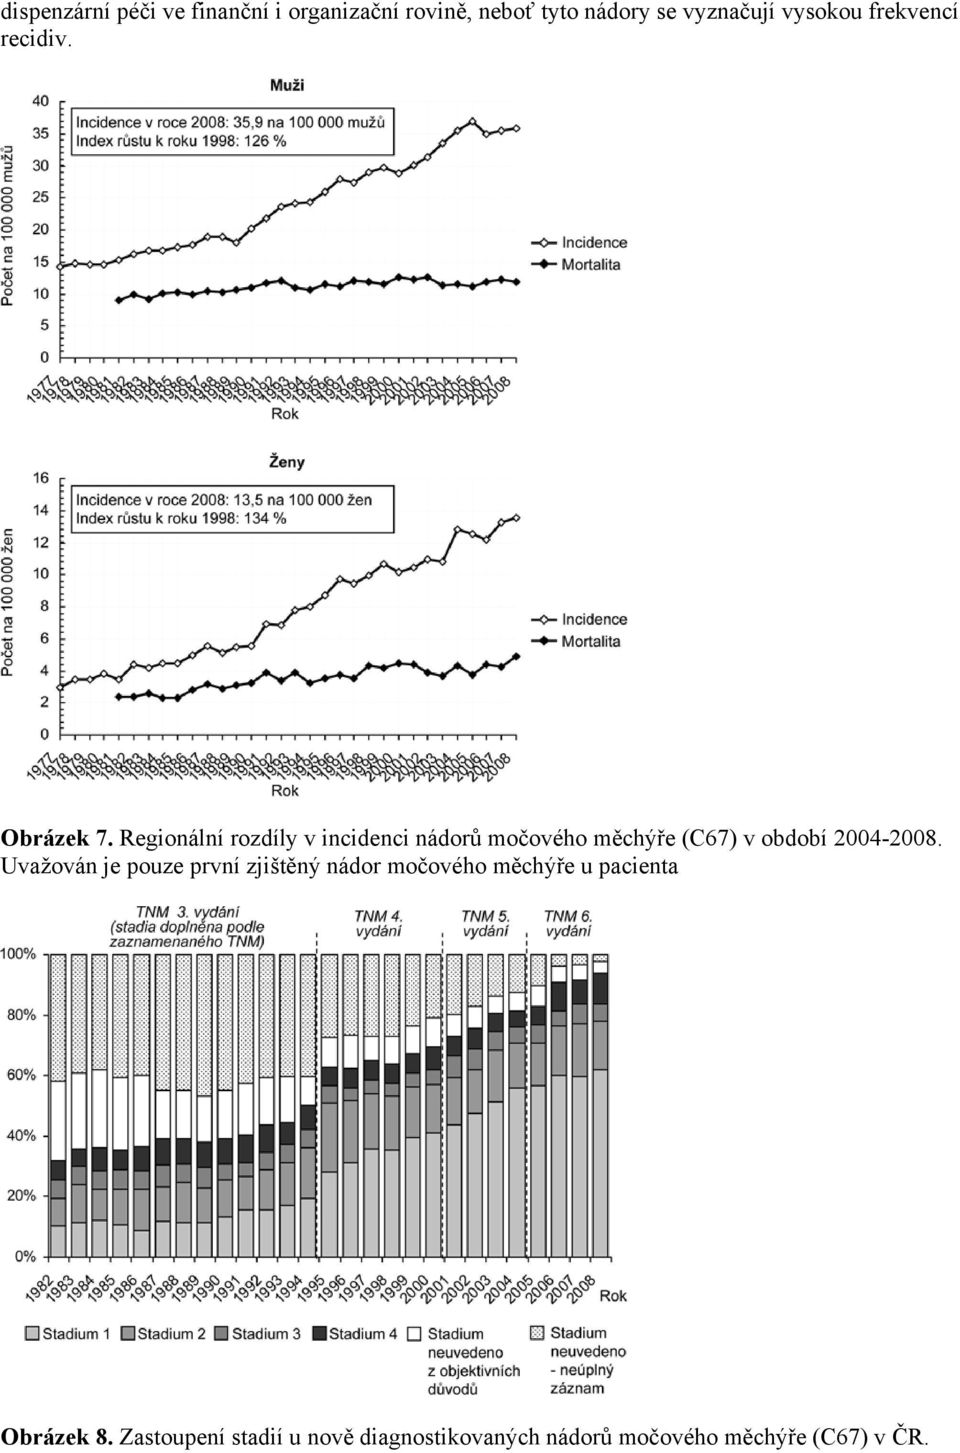 Regionální rozdíly v incidenci nádorů močového měchýře (C67) v období 2004-2008.